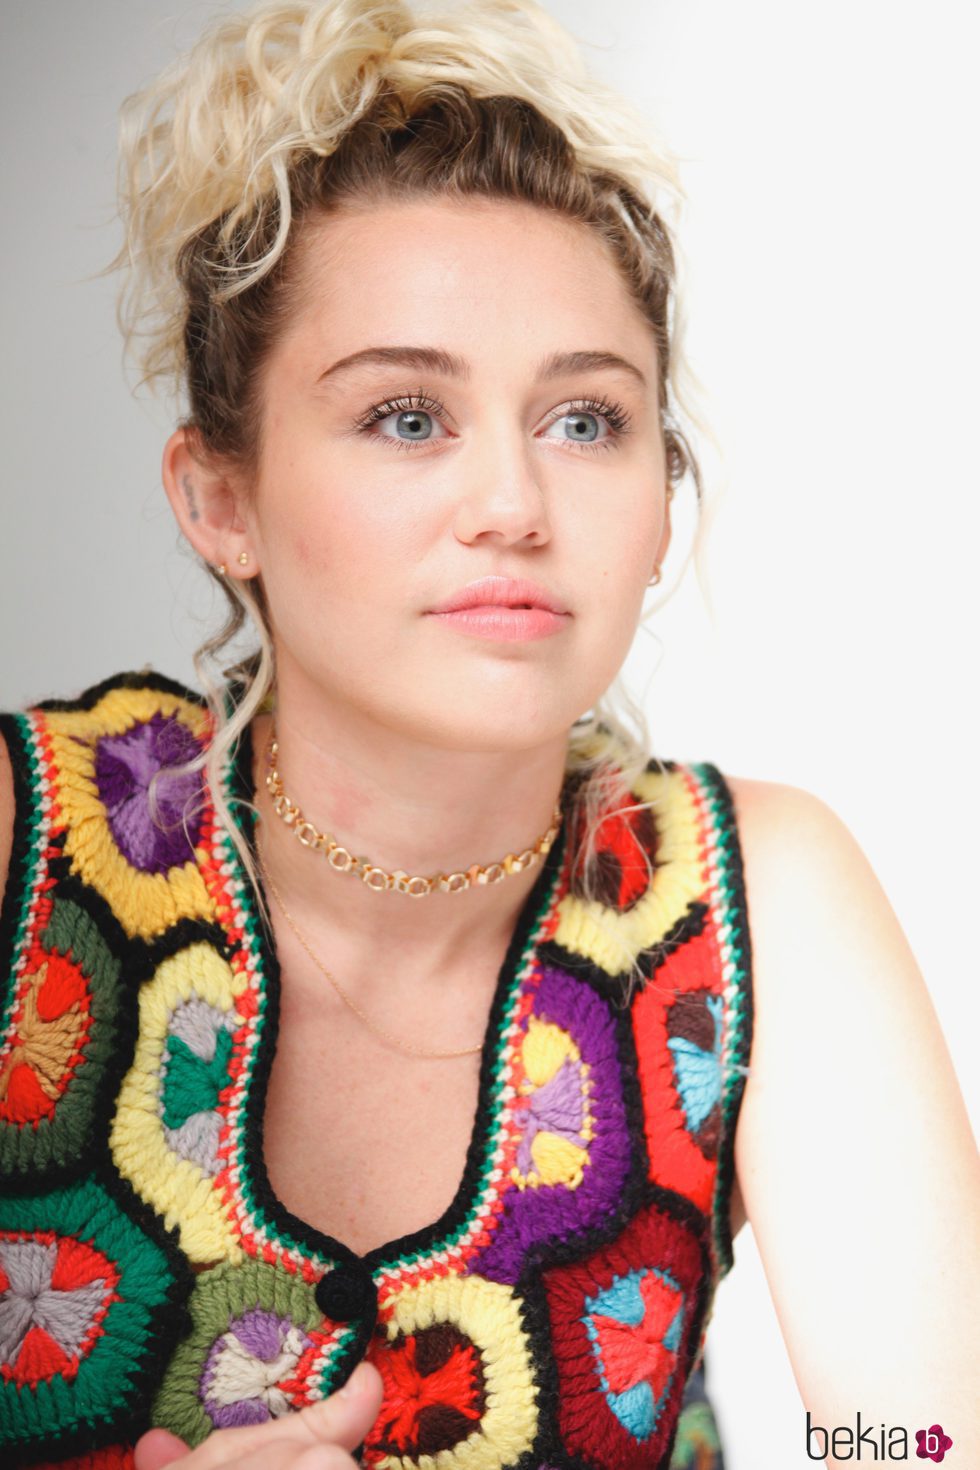 Miley Cyrus apuesta por el look natural con unos labios 